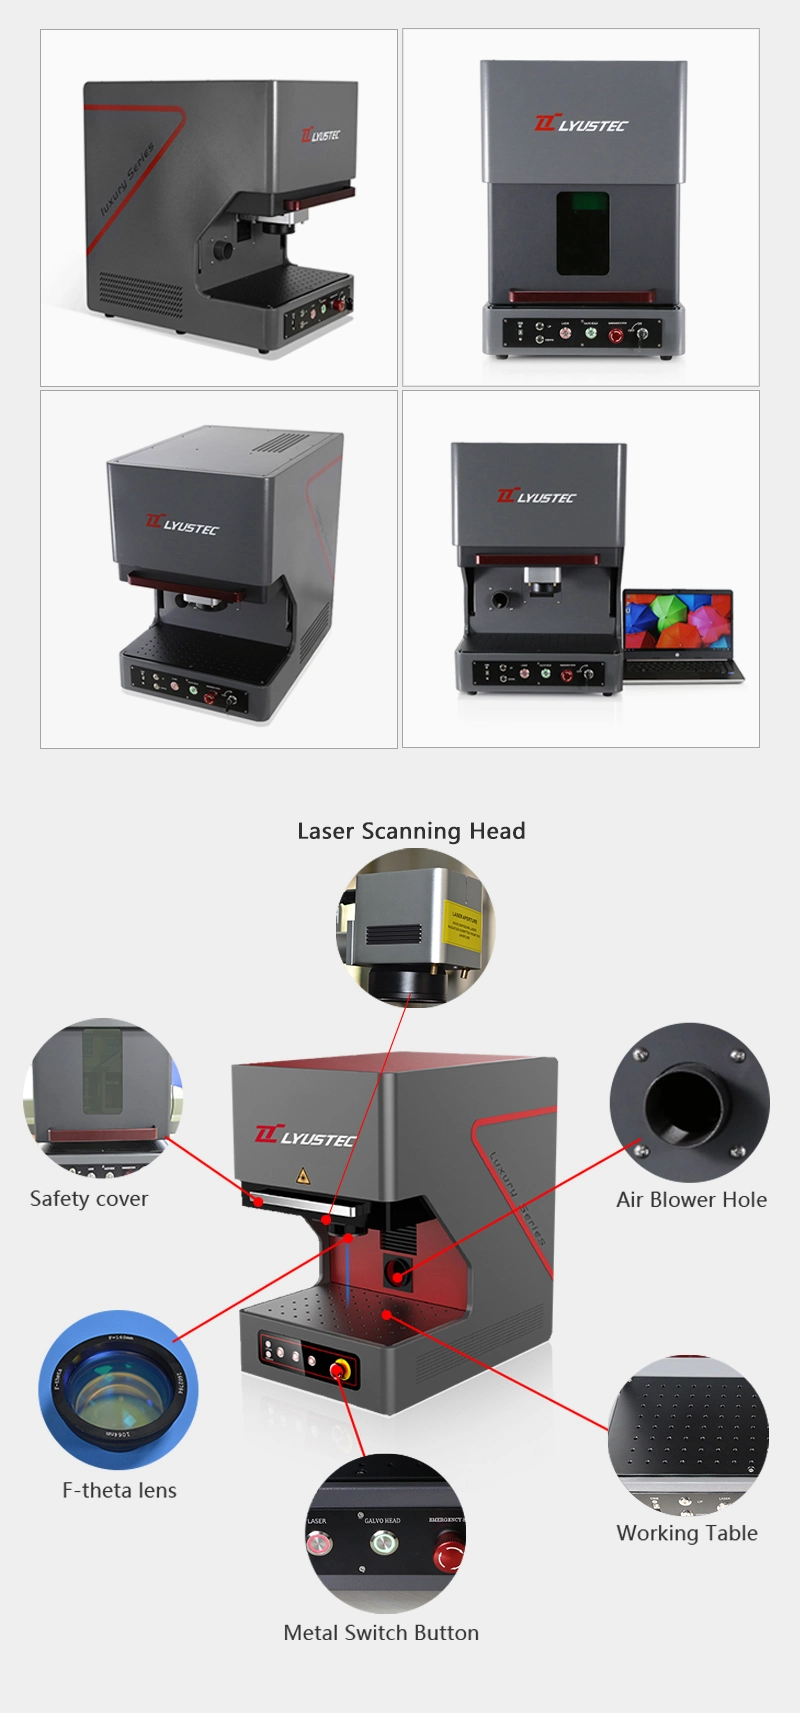 High Speed Fiber Laser Marking Machine 20W